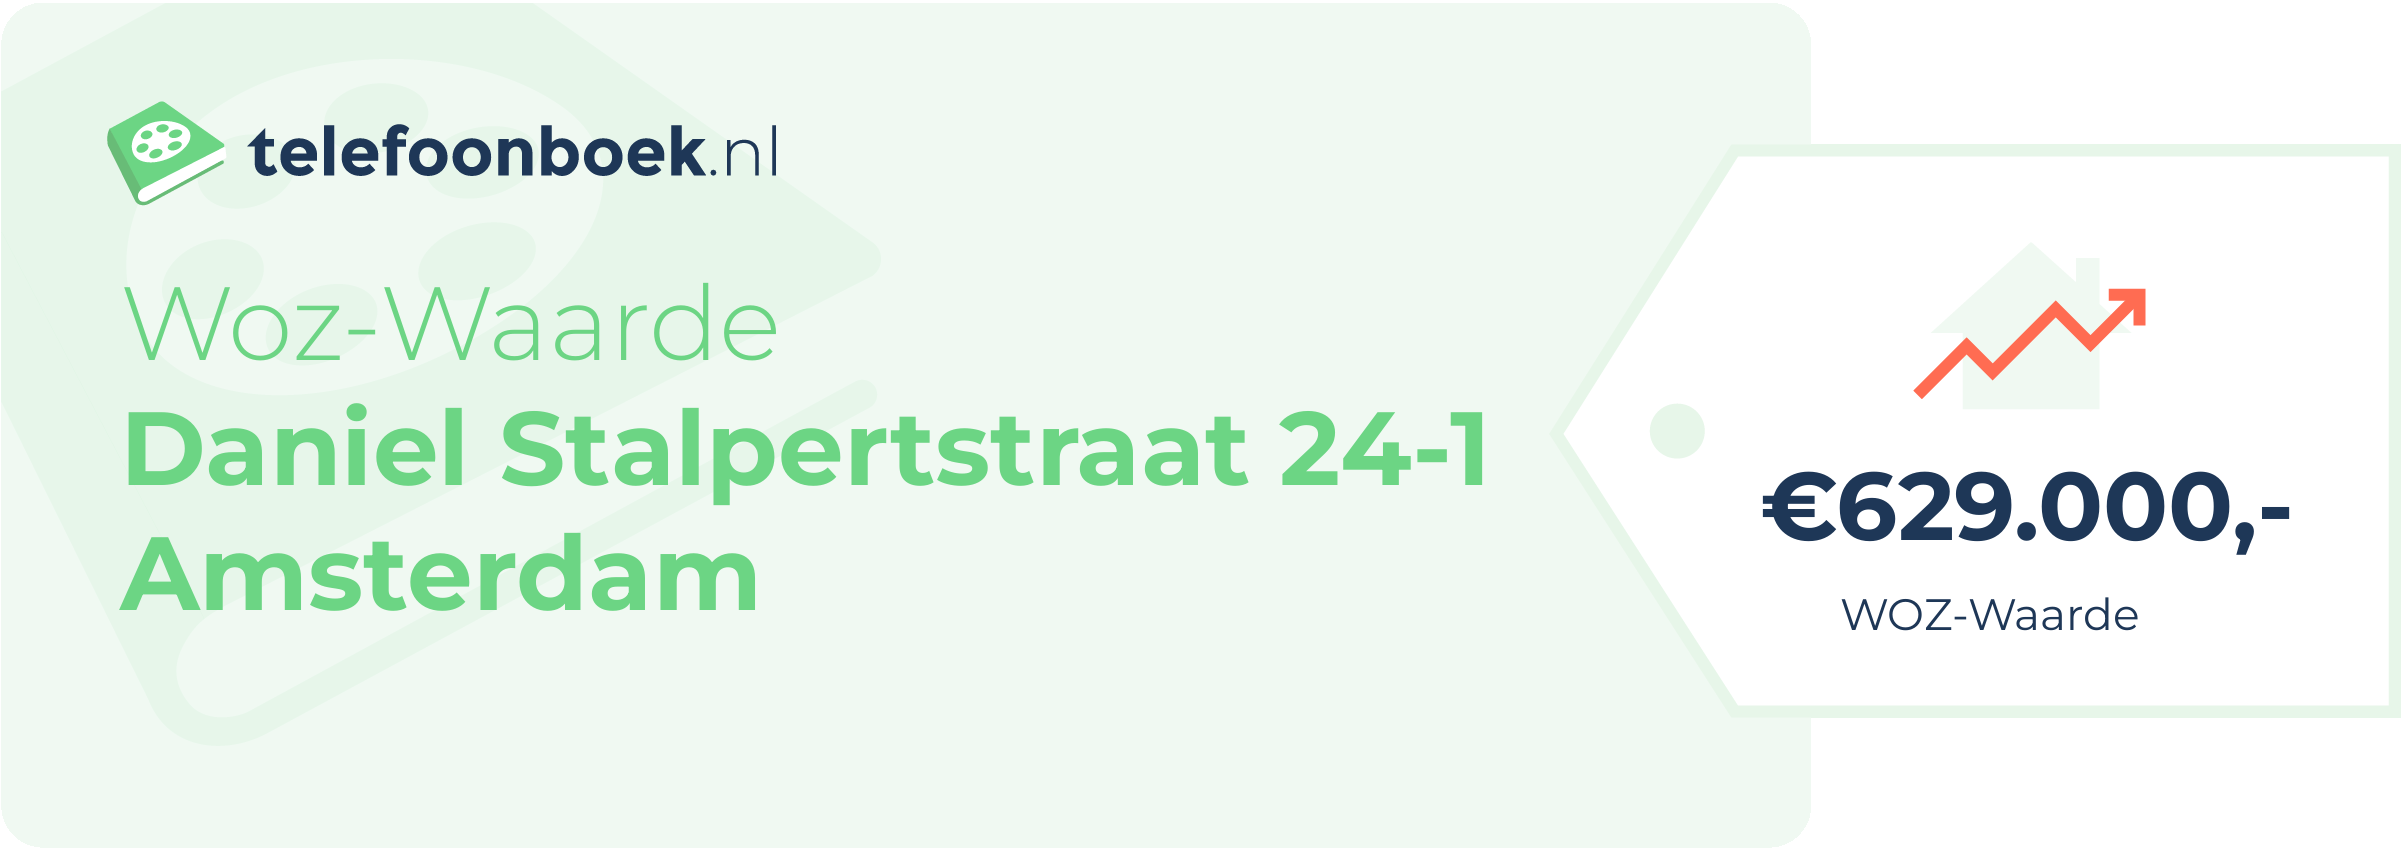 WOZ-waarde Daniel Stalpertstraat 24-1 Amsterdam